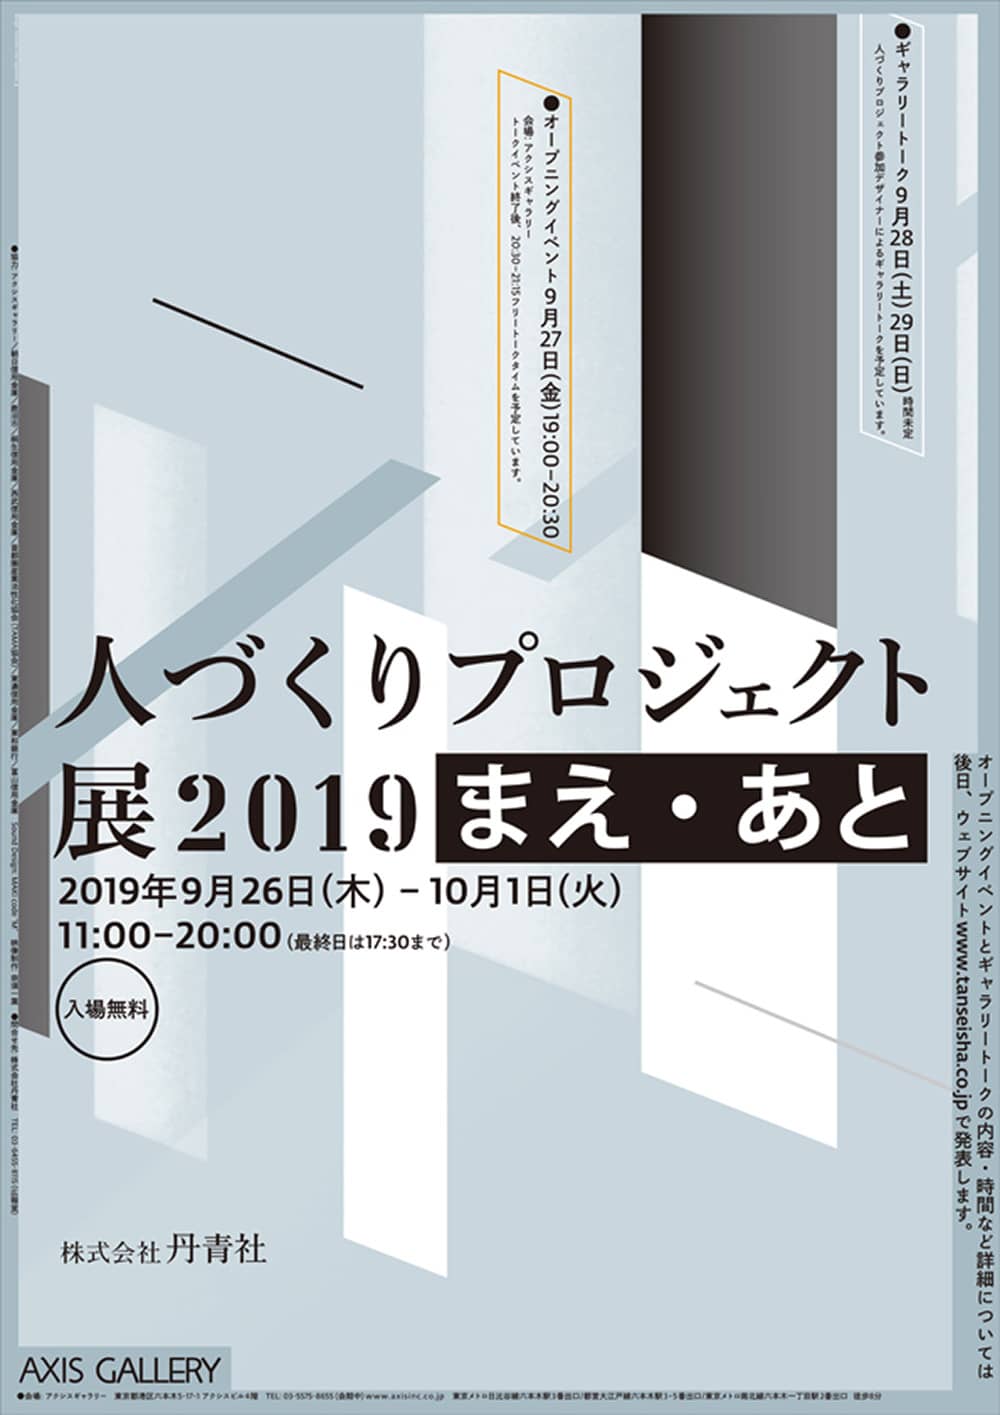 人づくりプロジェクト展2019株式会社丹青社ポスターデザイン